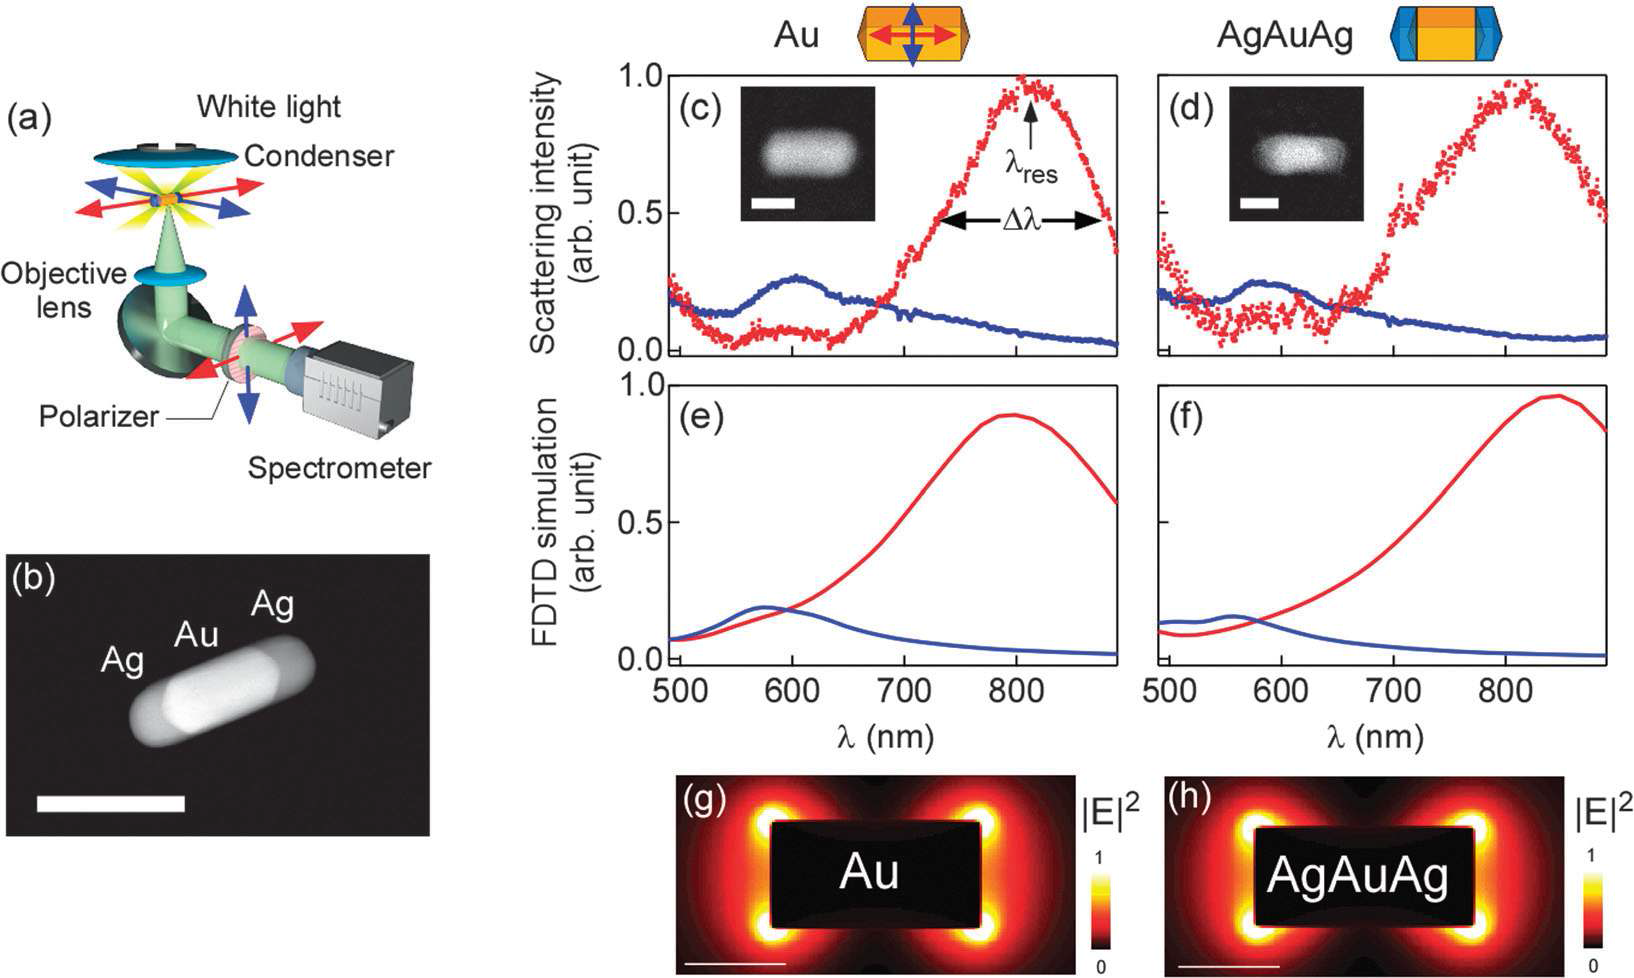 (좌) Dar-field spectro-microscopy 방법과 AgAuAg nanorod의 전자현미경 사진 (중) Au nanorod의 플라스몬 공명스펙트럼과 FDTD 전산모사, (우) AgAuAg nanorod의 공명스펙트럼과 FDTD 전산모사.